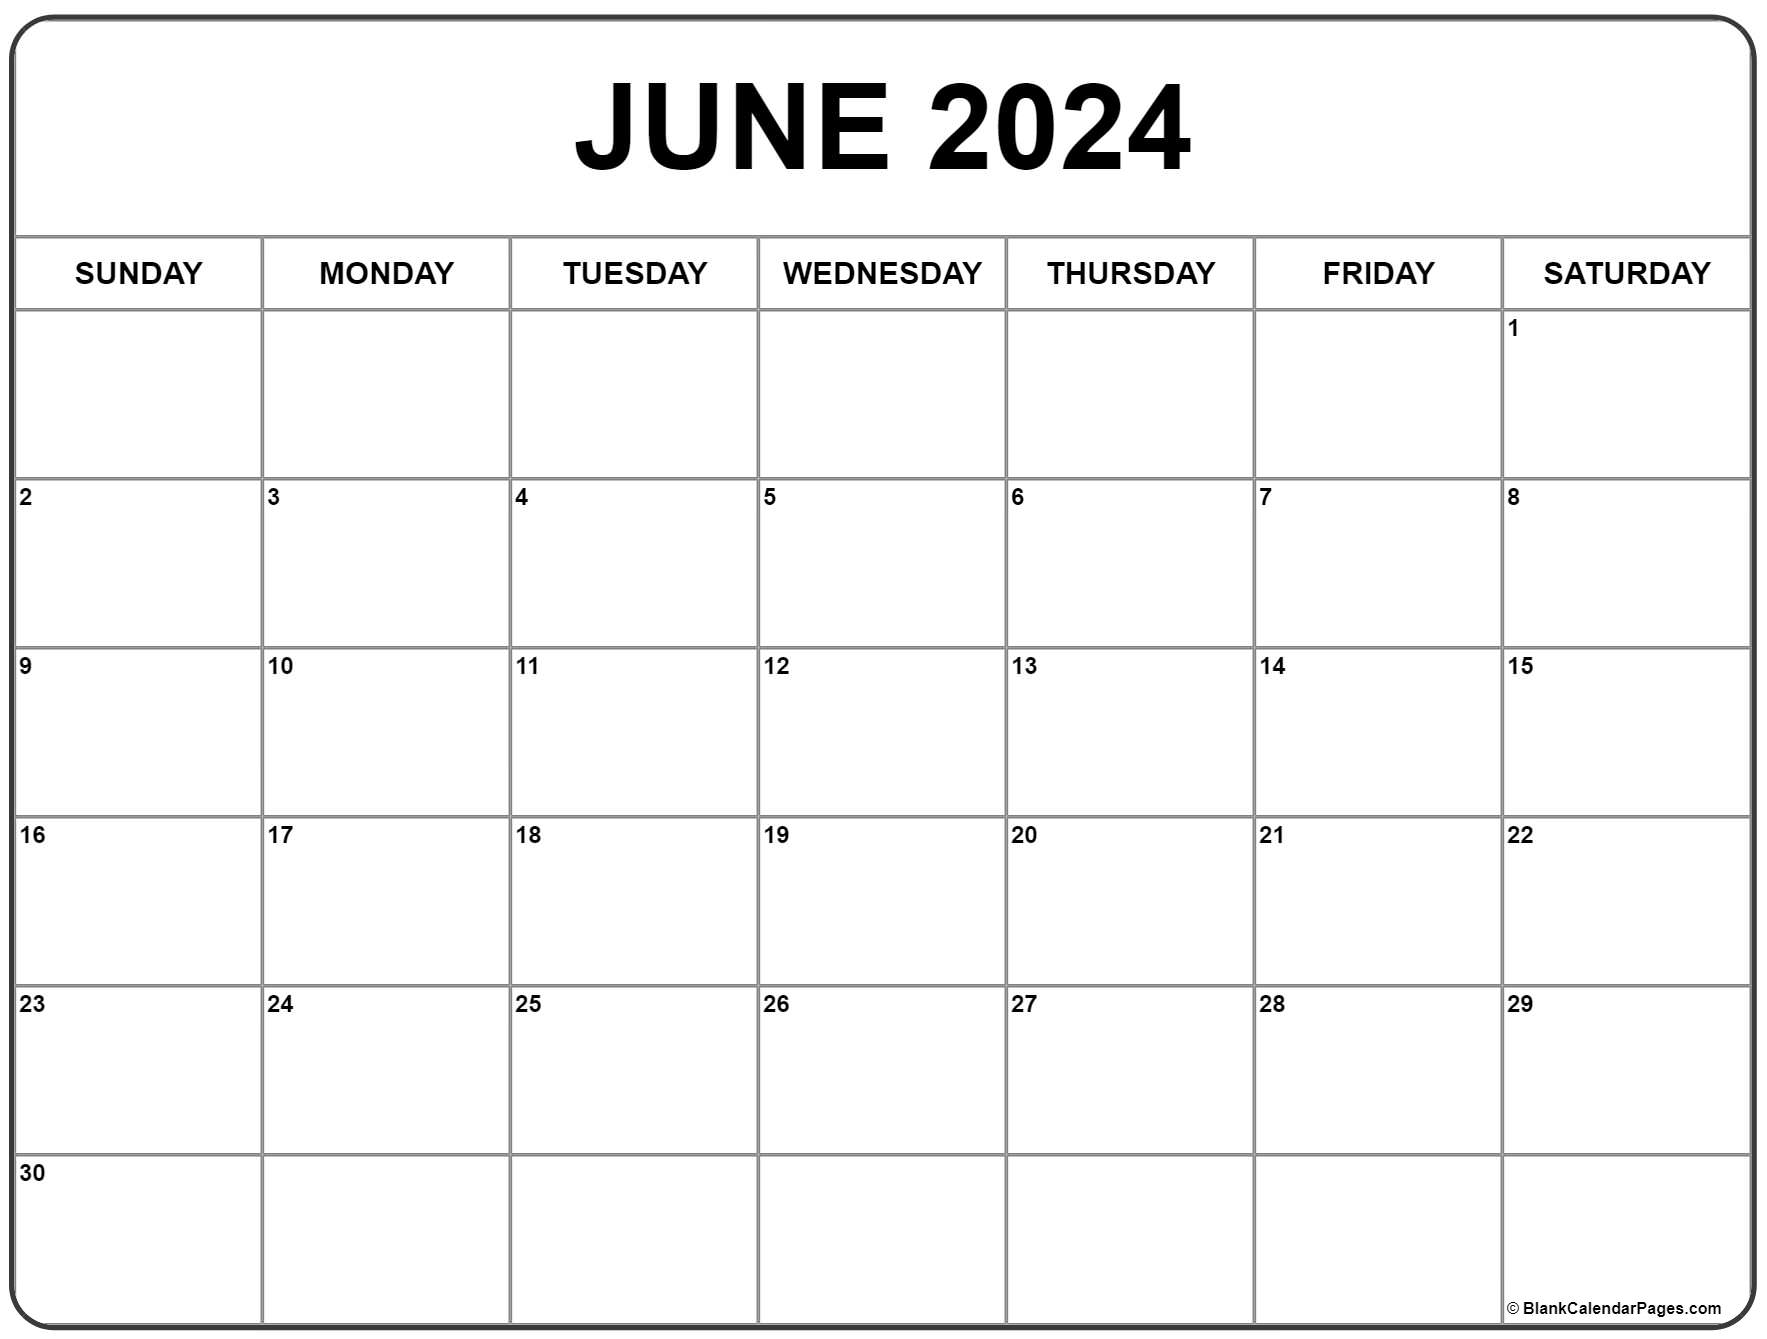 June 2024 Calendar | Free Printable Calendar for June 2024 Free Printable Calendar